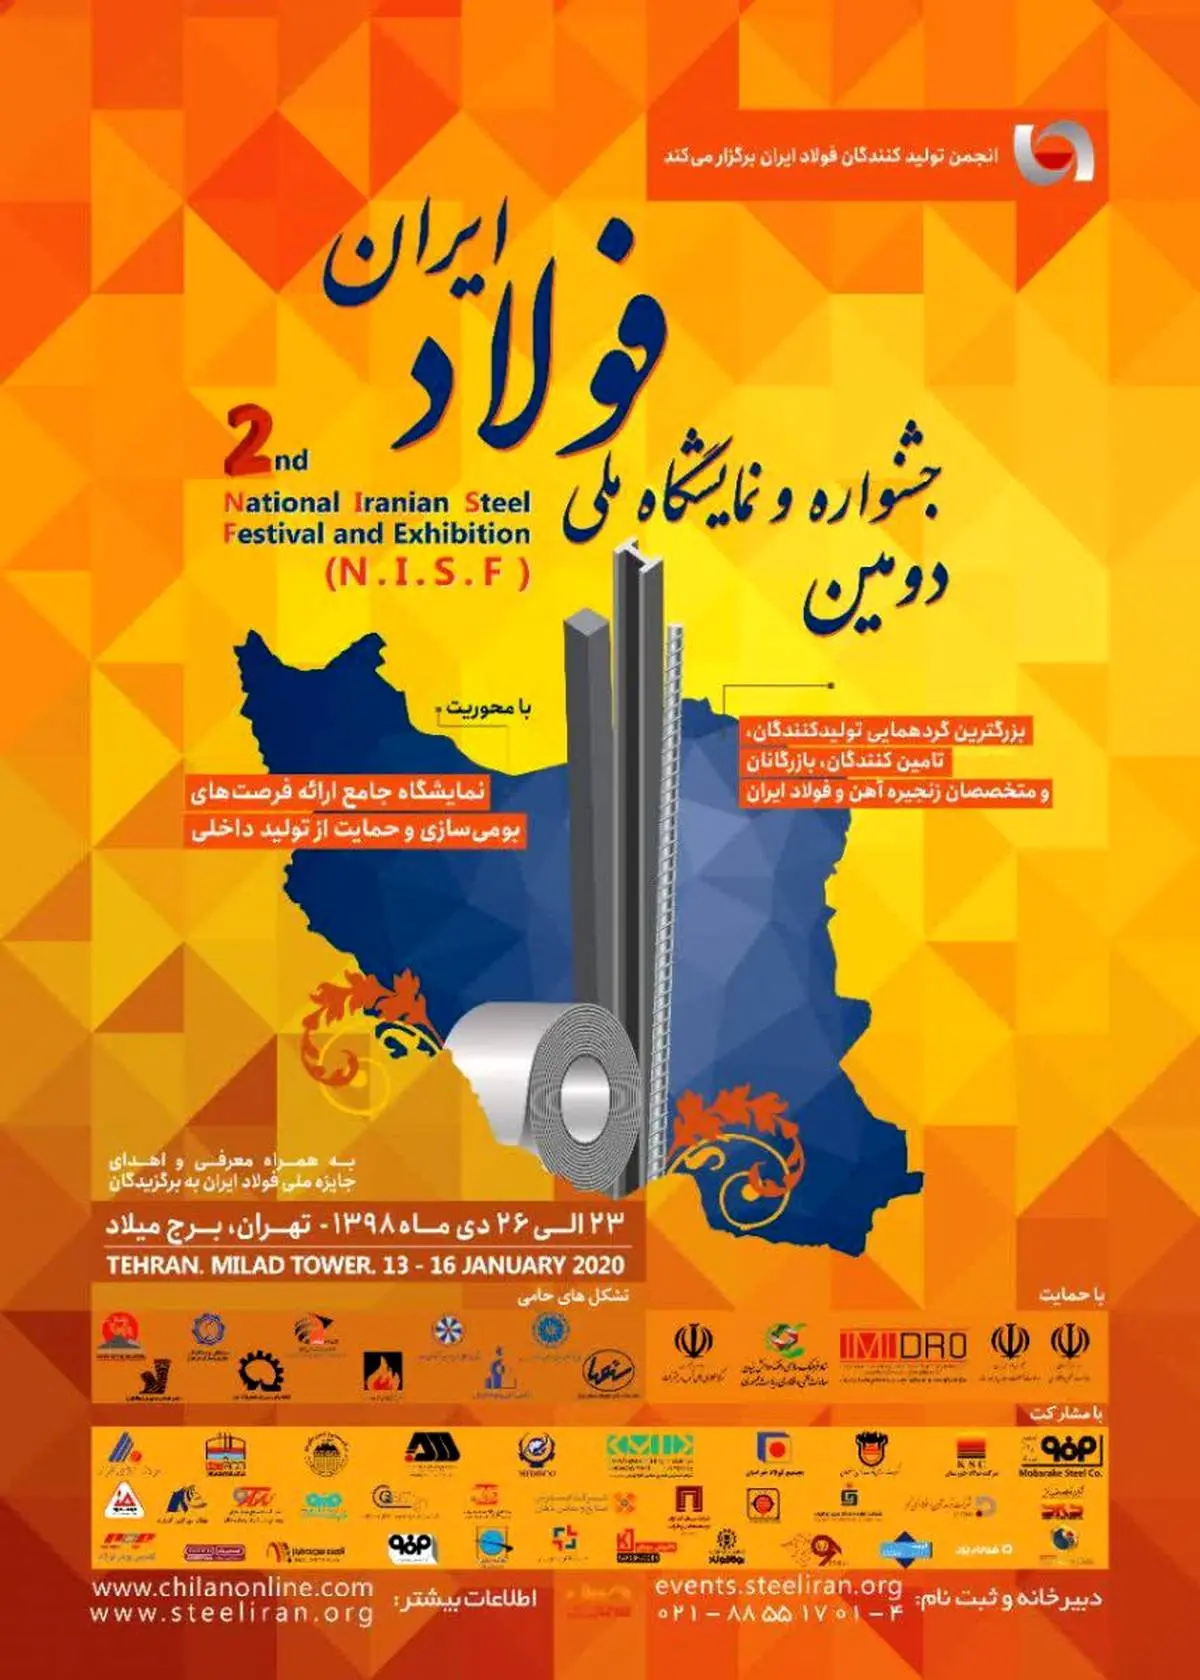   دومین جشنواره و نمایشگاه ملی فولاد ایران در دی ماه برگزار می شود